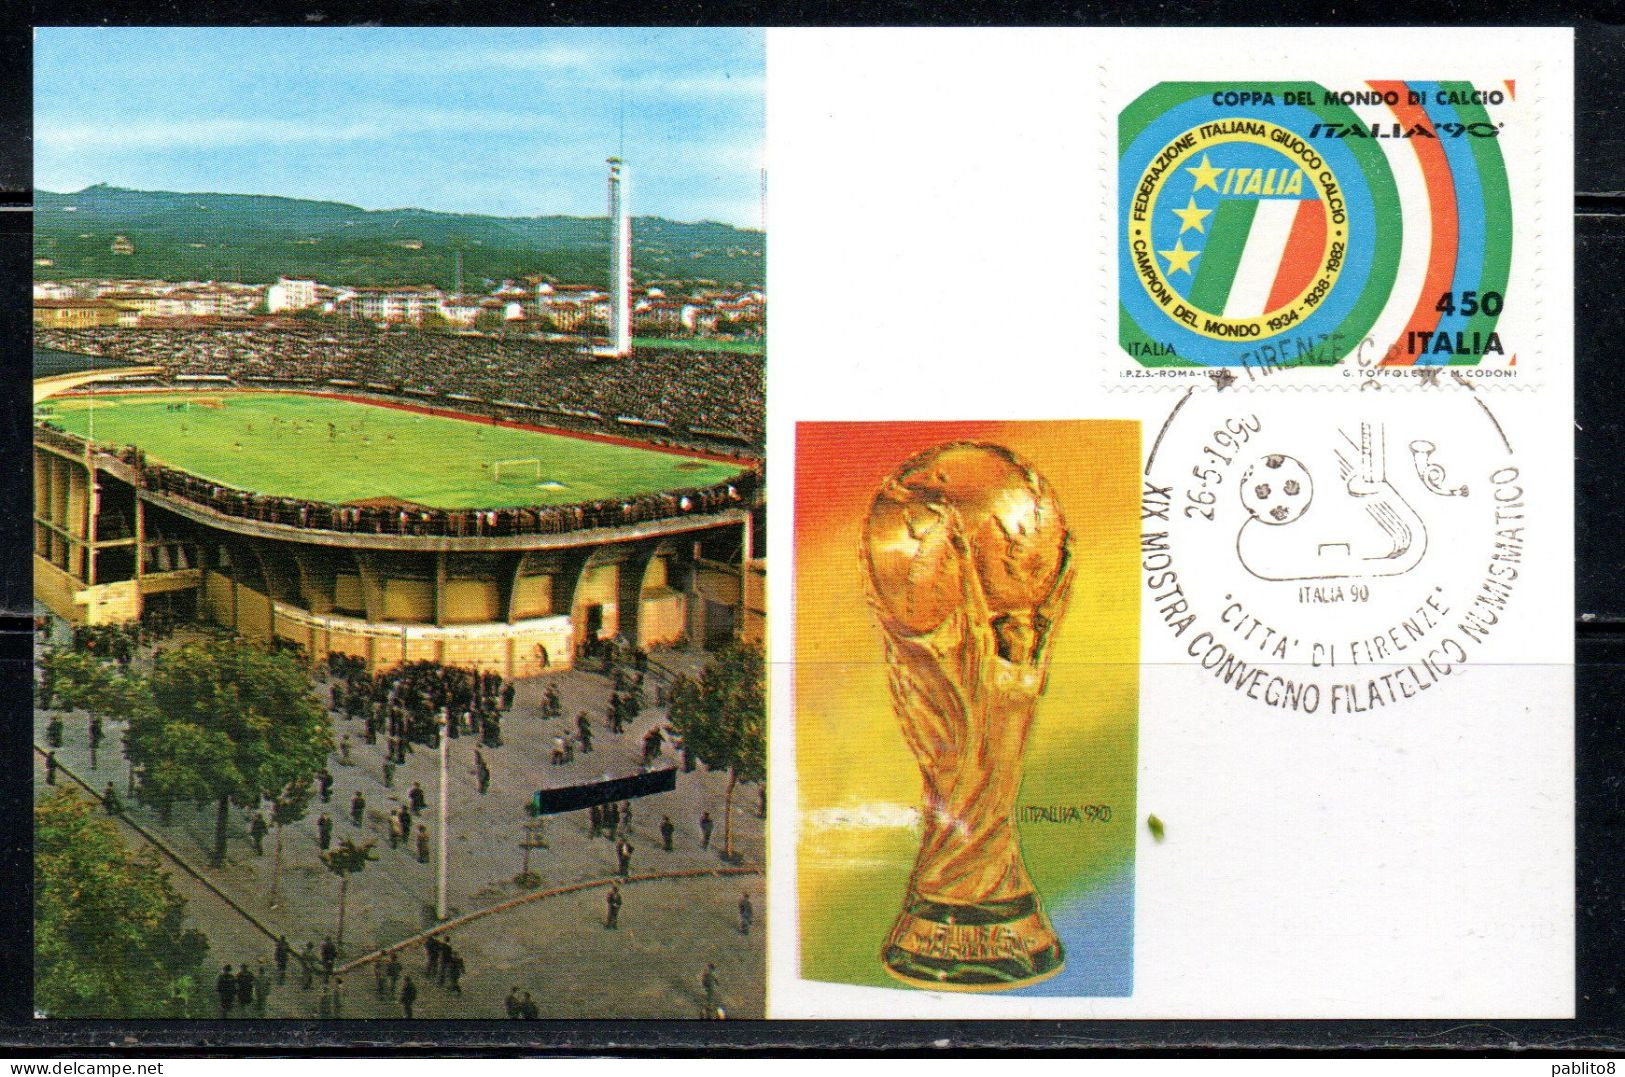 ITALIA 90 REPUBBLICA ITALY REPUBLIC 1990 COPPA DEL MONDO DI CALCIO ITALIA LIRE 450 MAXI MAXIMUM CARD CARTOLINA CARTE - Maximumkaarten